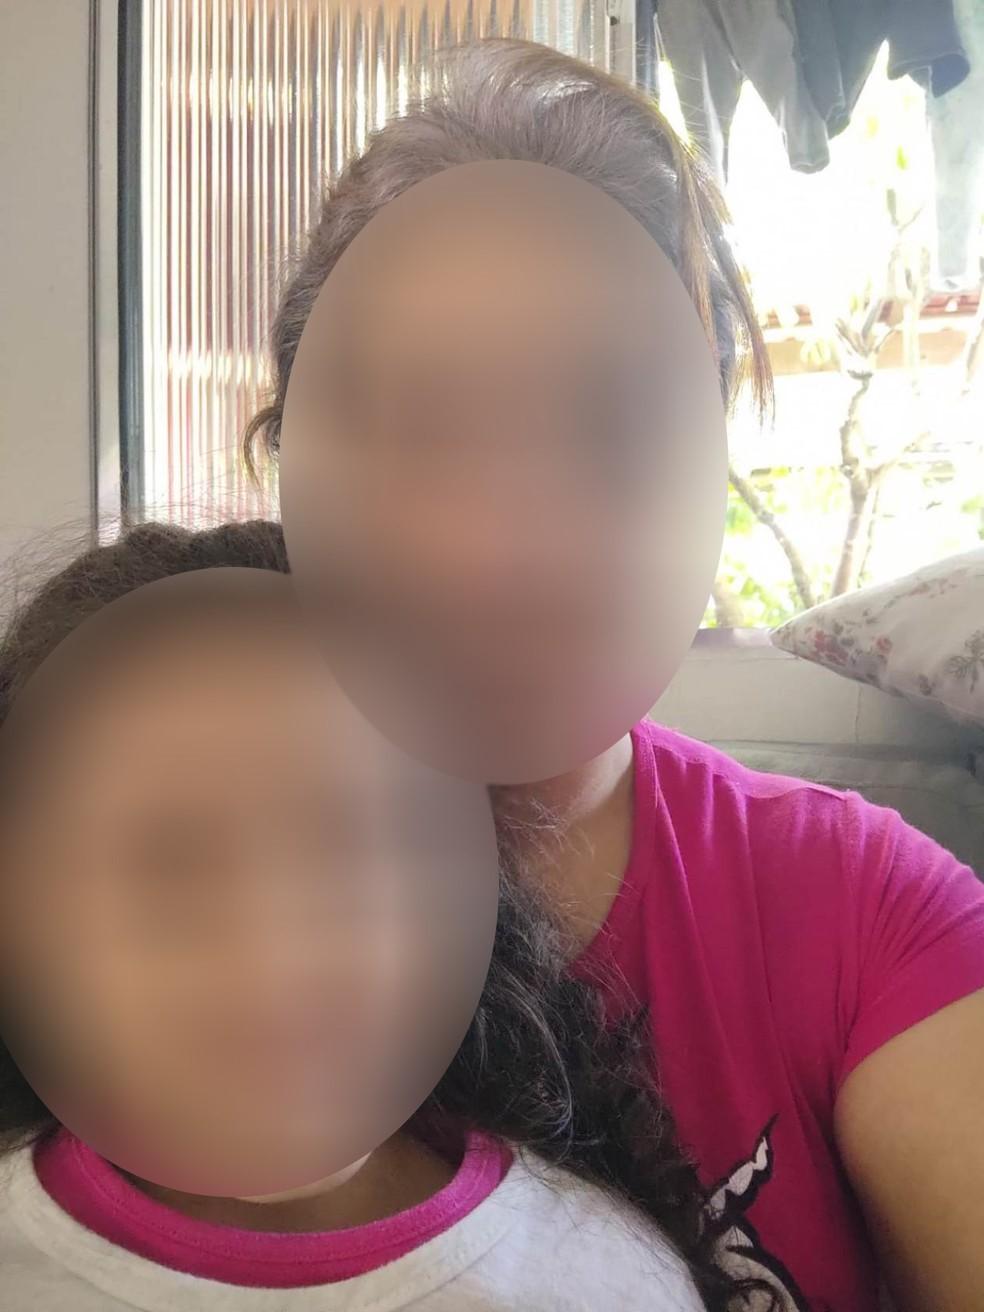 Mulher denuncia marido de amiga por estuprar a filha de 4 anos: “Mãe, ele lambeu meu peito”, contou a menina